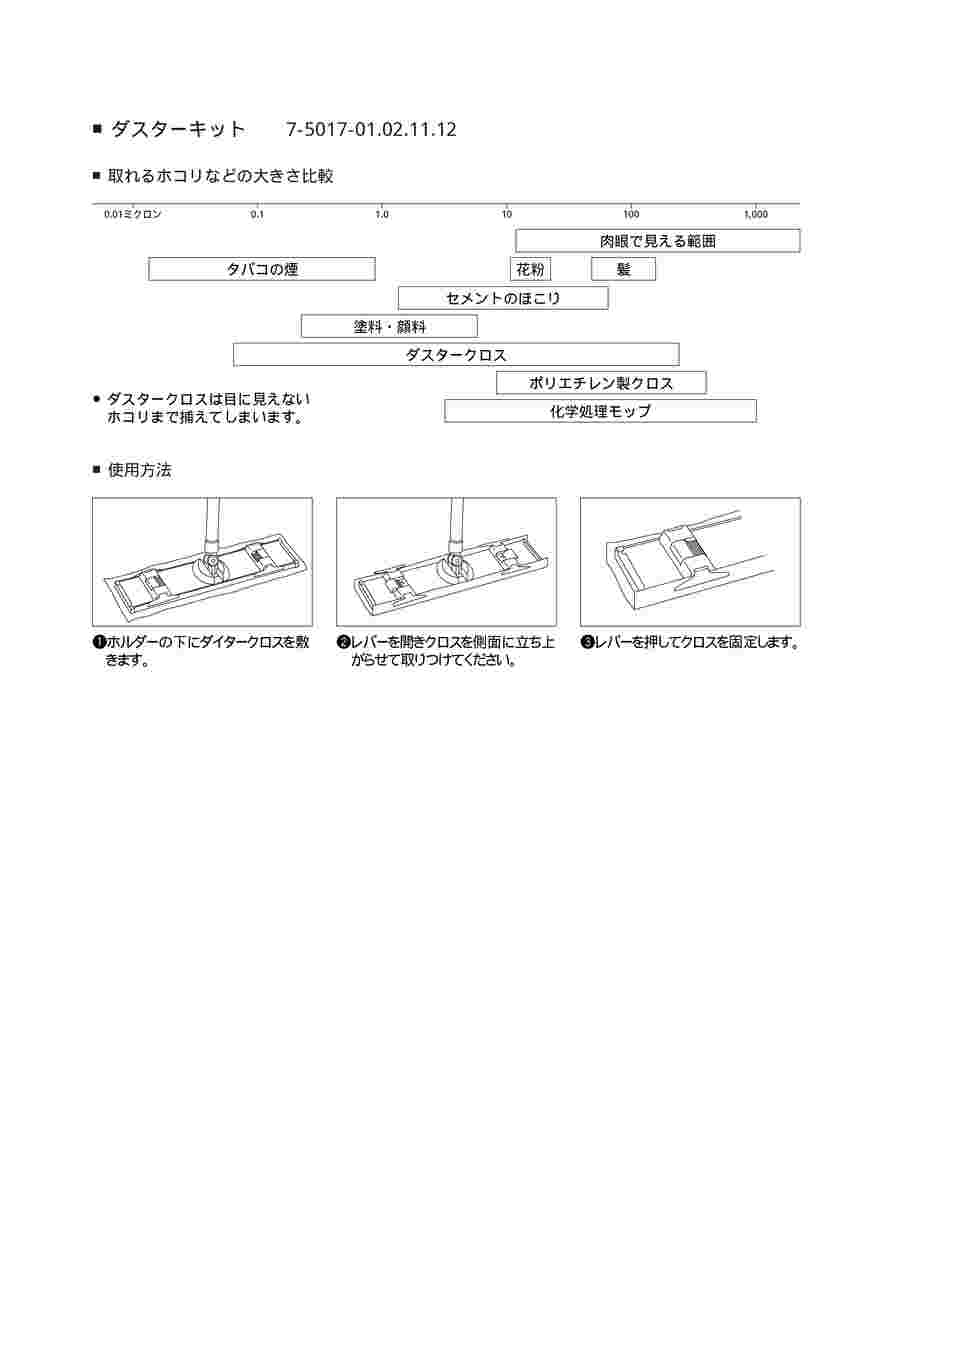 7-5017-01 ダスターキット S 430×100 D/KIT S 【AXEL】 アズワン